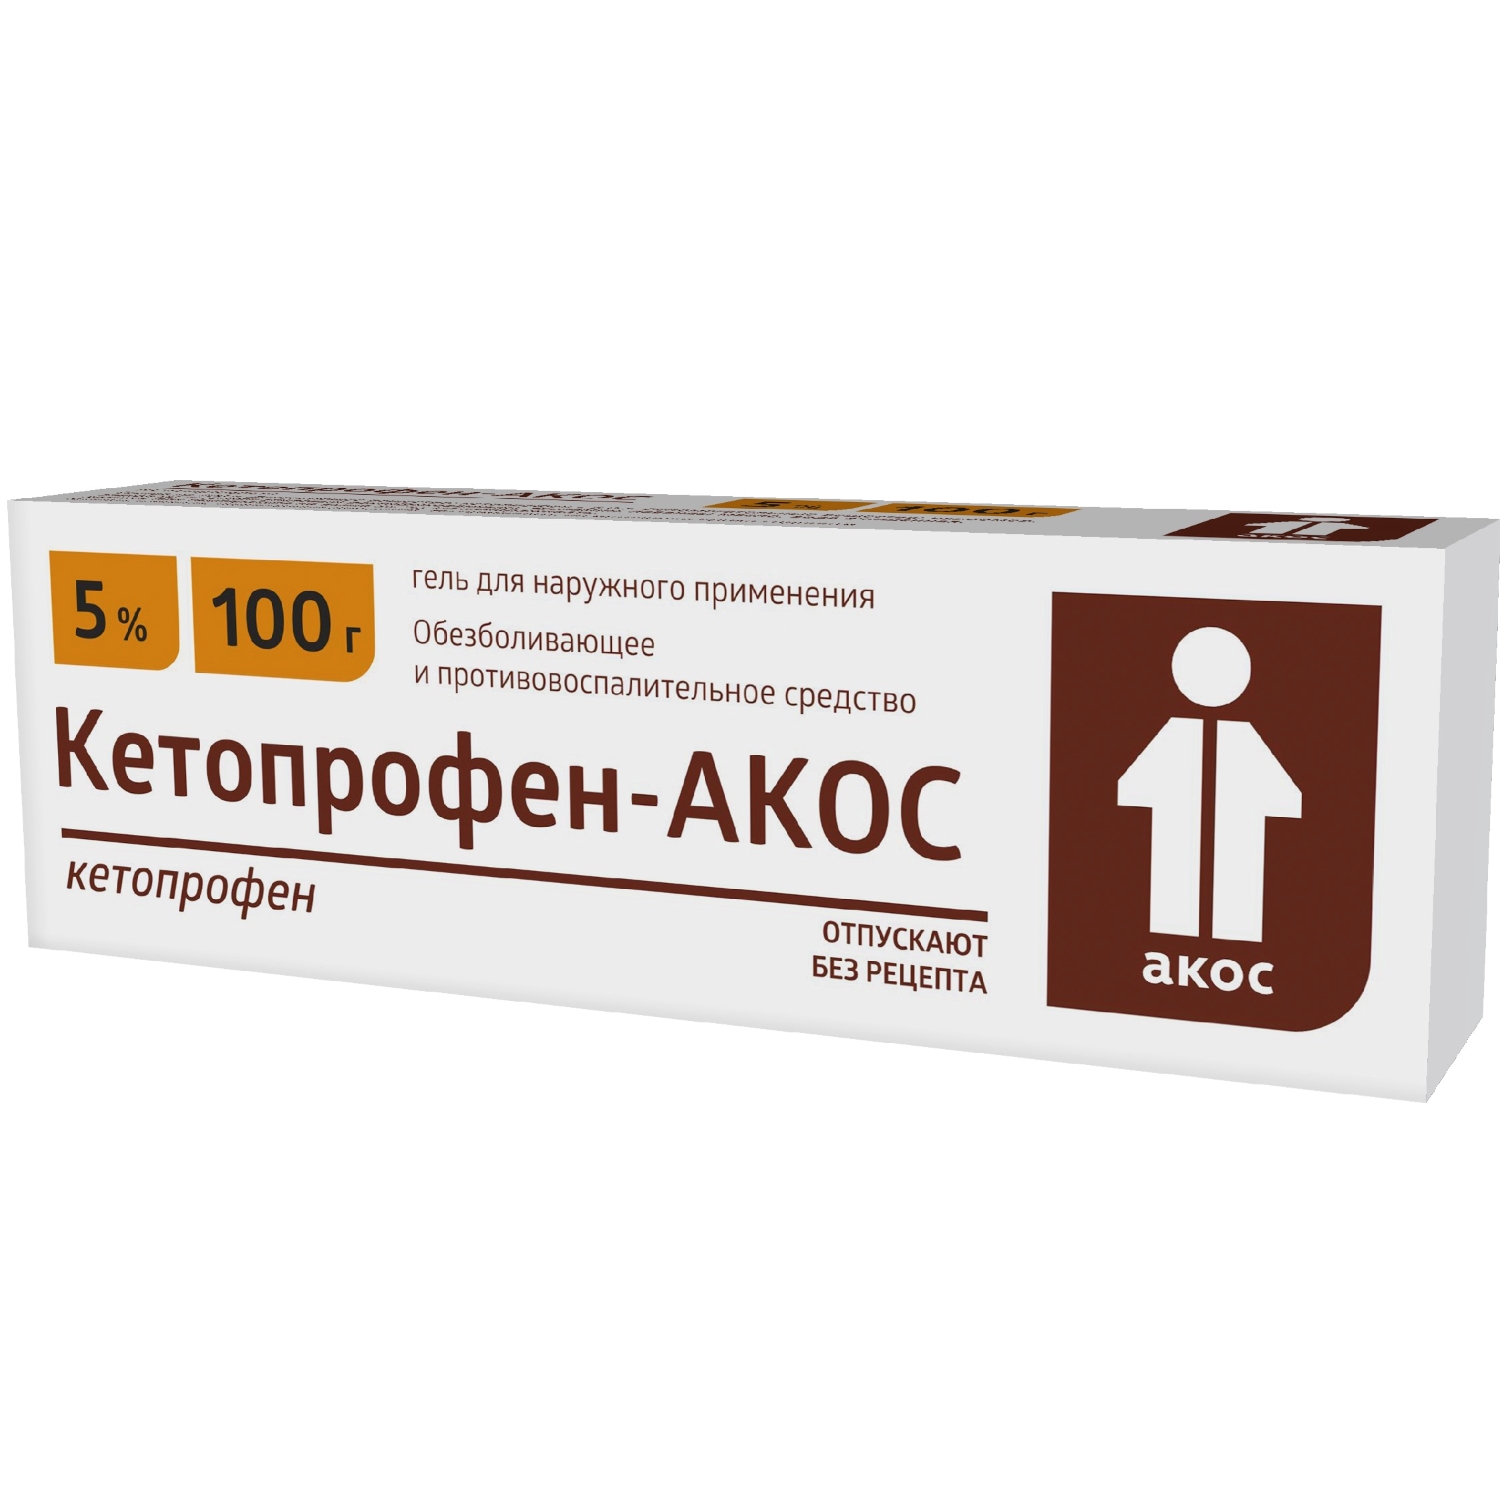 Кетопрофен-АКОС гель для наружн. прим. 5% 100г троксевазин гель для наружн примен 2% 100г